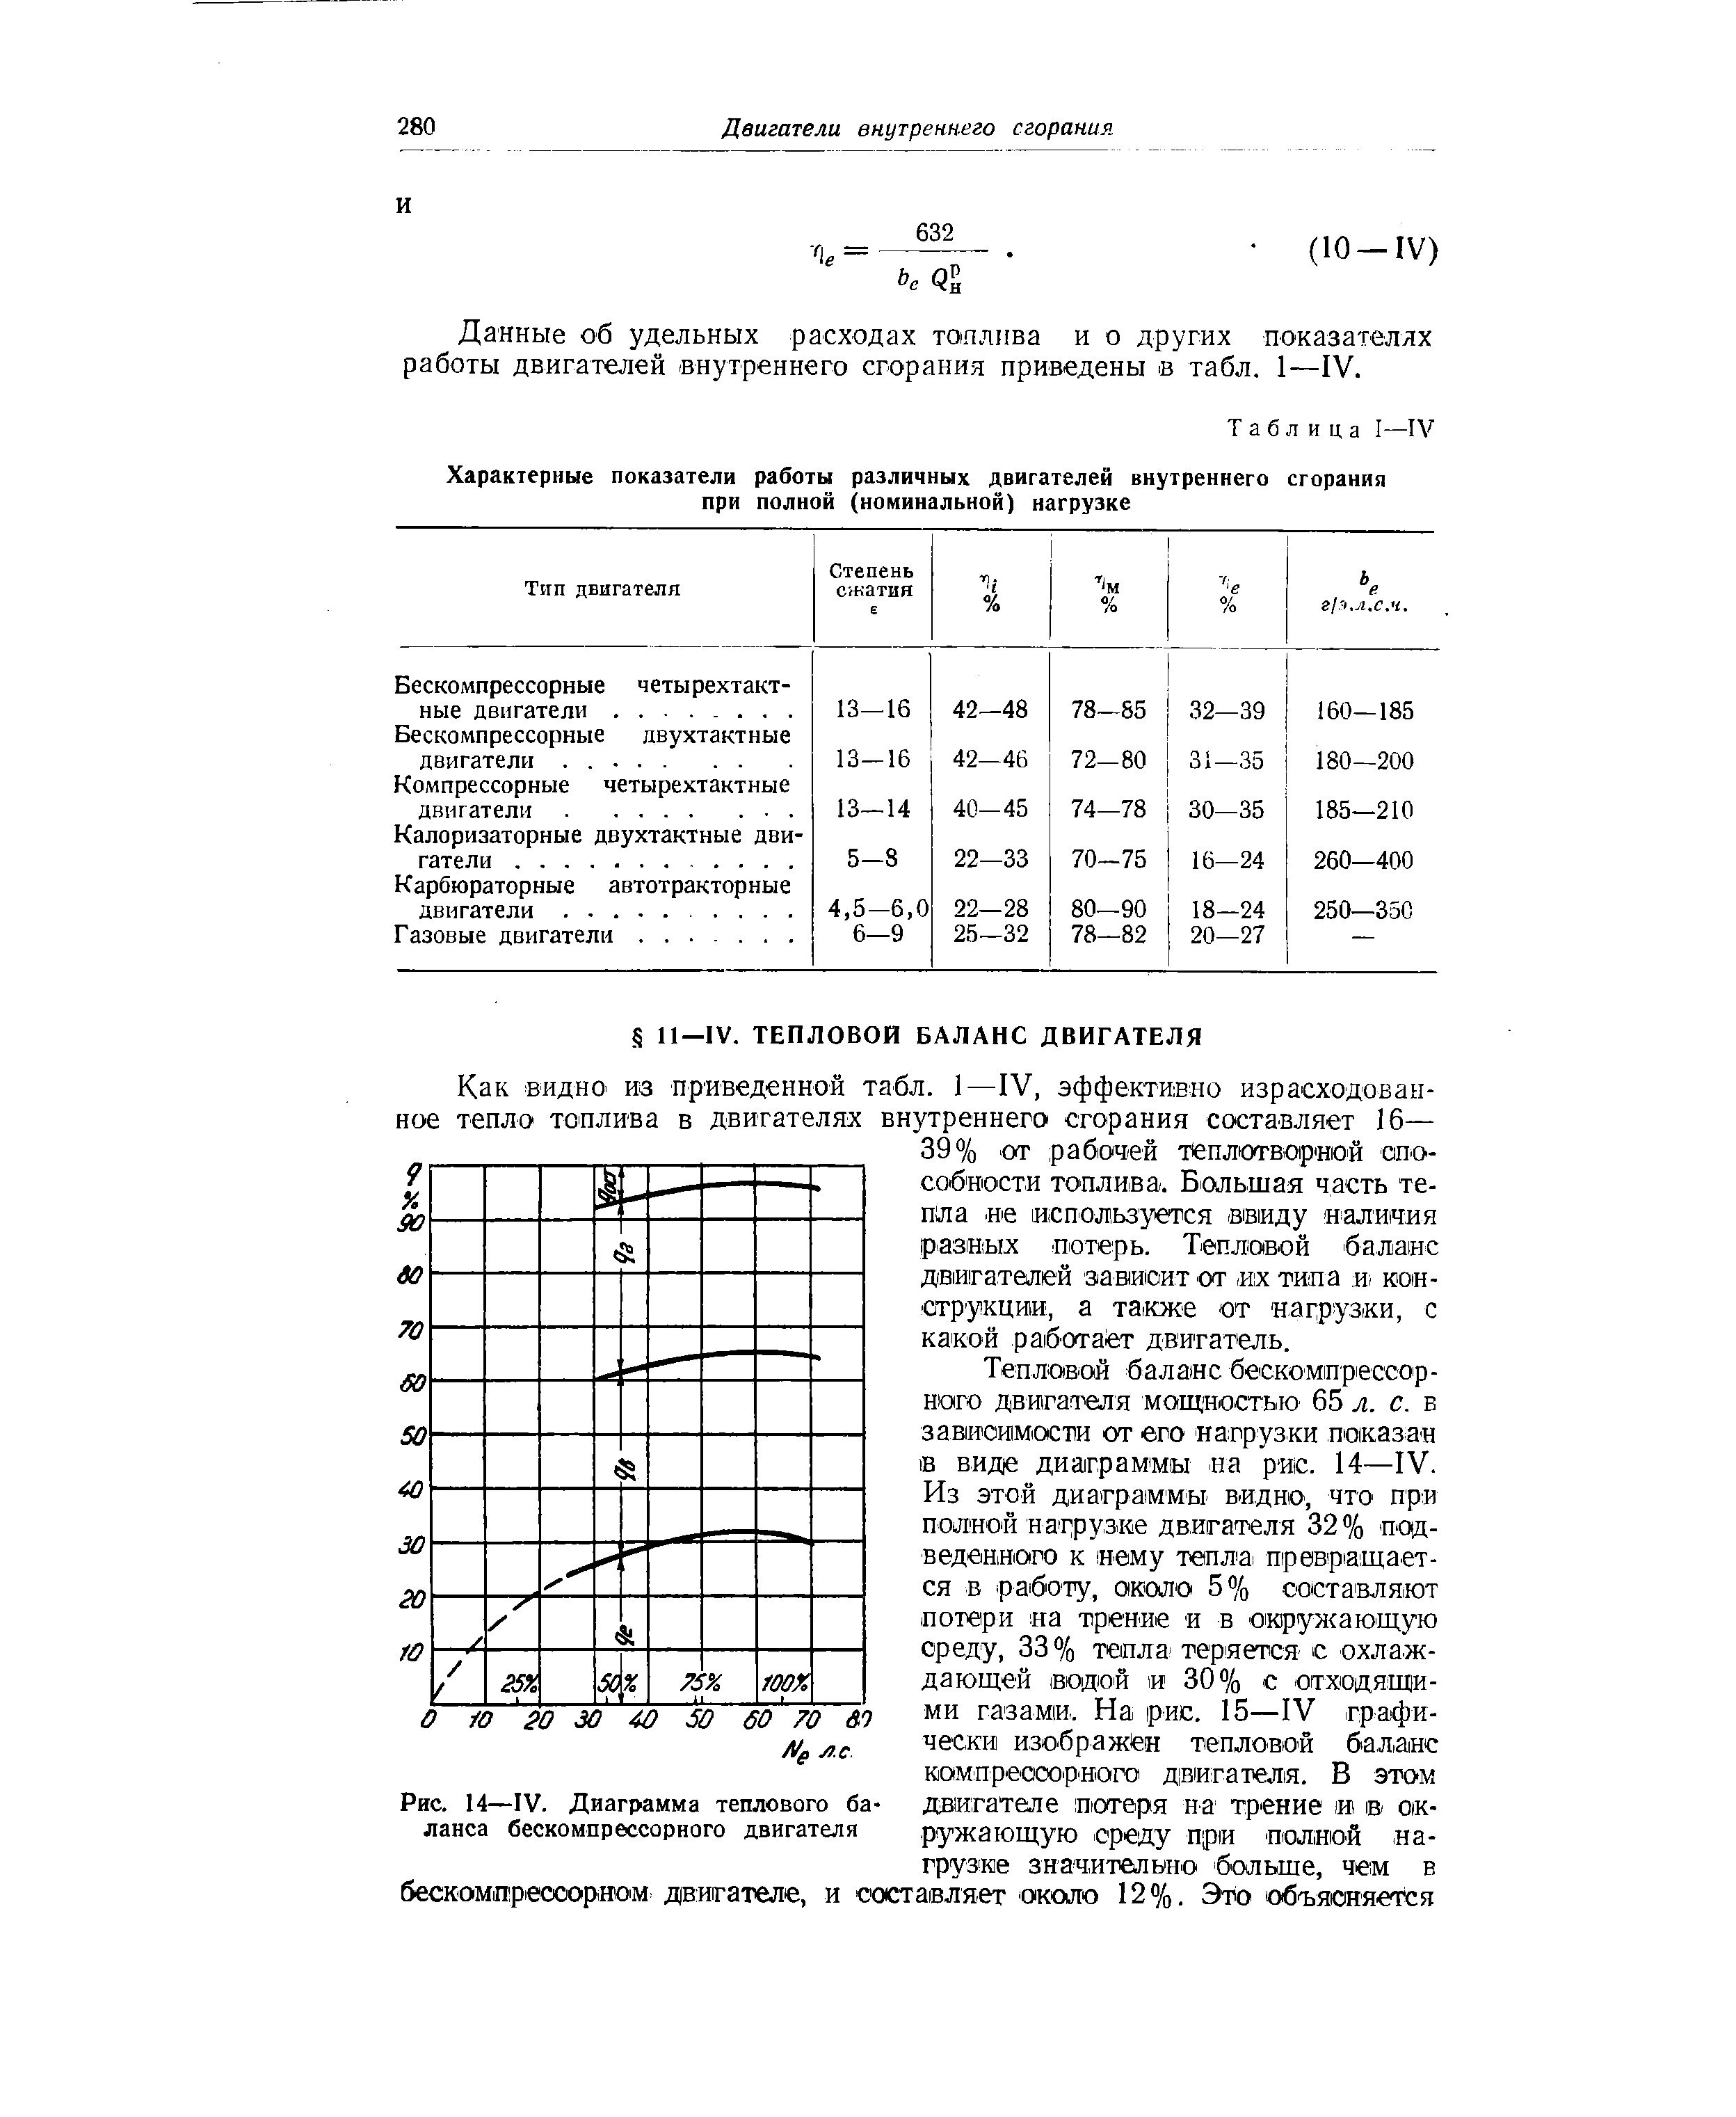 Рис. 14—IV. Диаграмма теплового баланса бескомпрессорного двигателя
